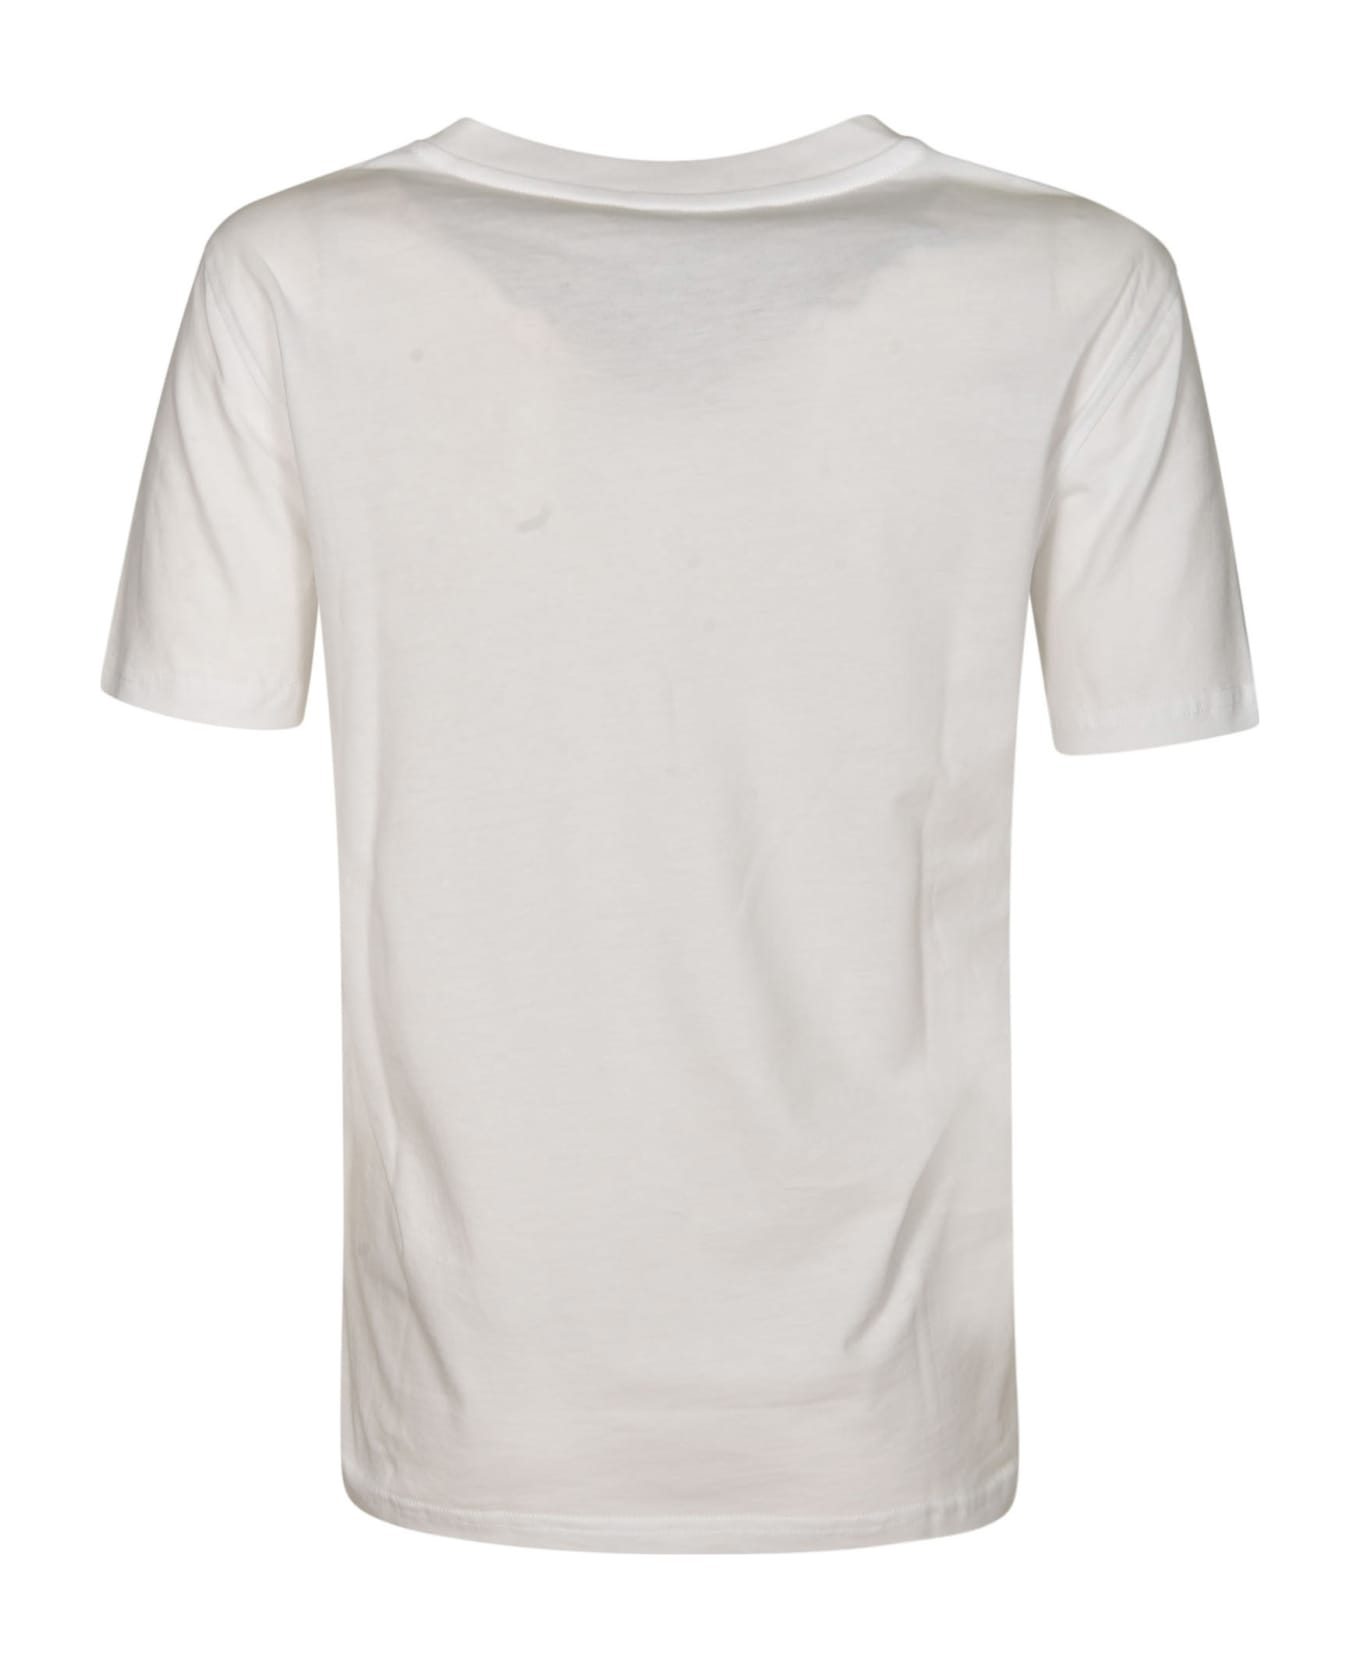 Moschino Teddy 40 Years Of Love T-shirt - White Tシャツ